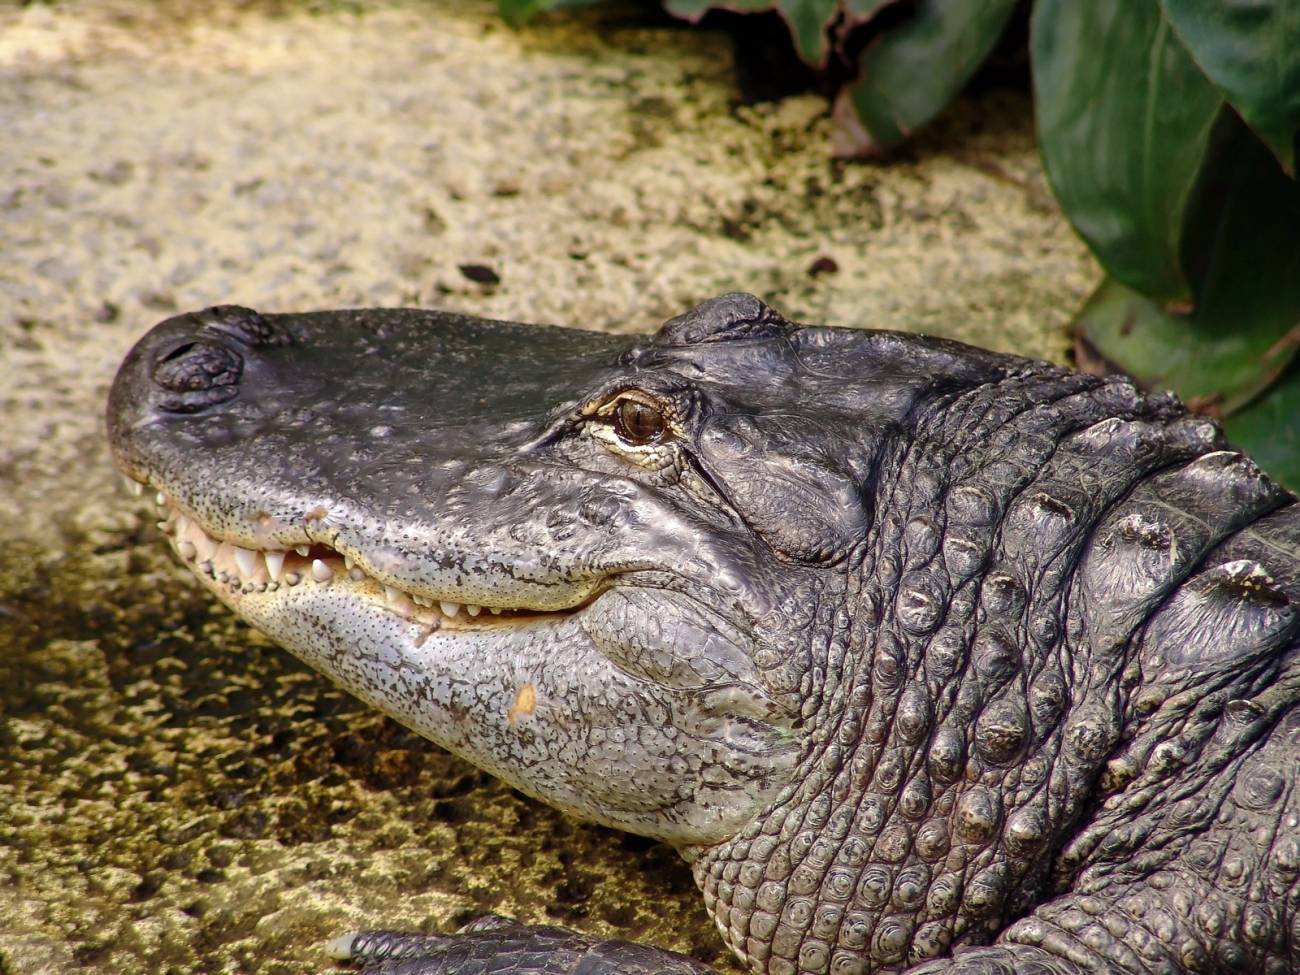 Los aligatores, como los dinosaurios, logran sobrevivir a bajos niveles de oxígeno dilatando sus pulmones